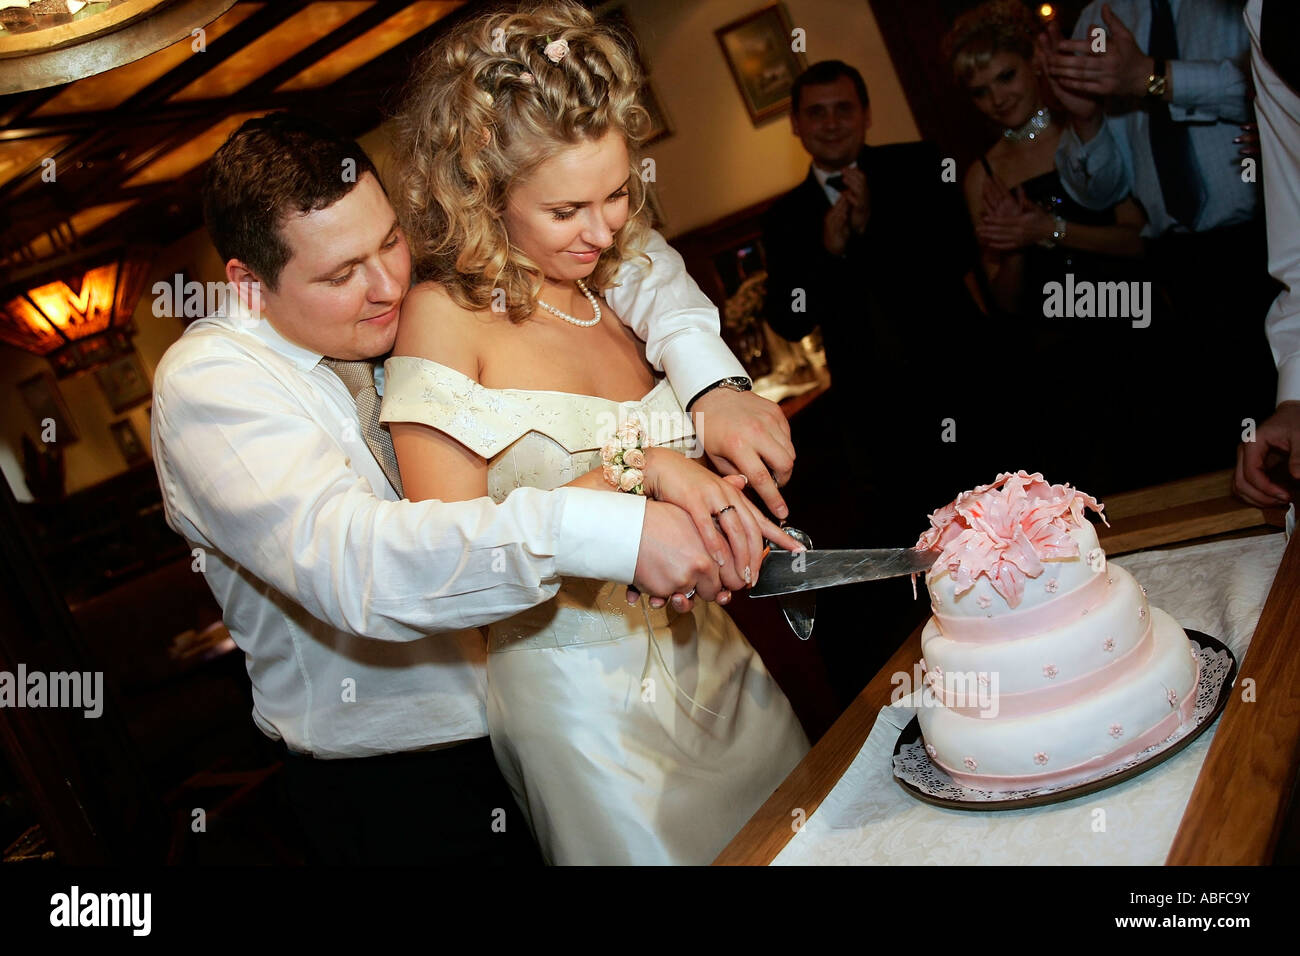 Une vue générale d'un couple nouvellement marié couper un gâteau de mariage à l'accueil Banque D'Images